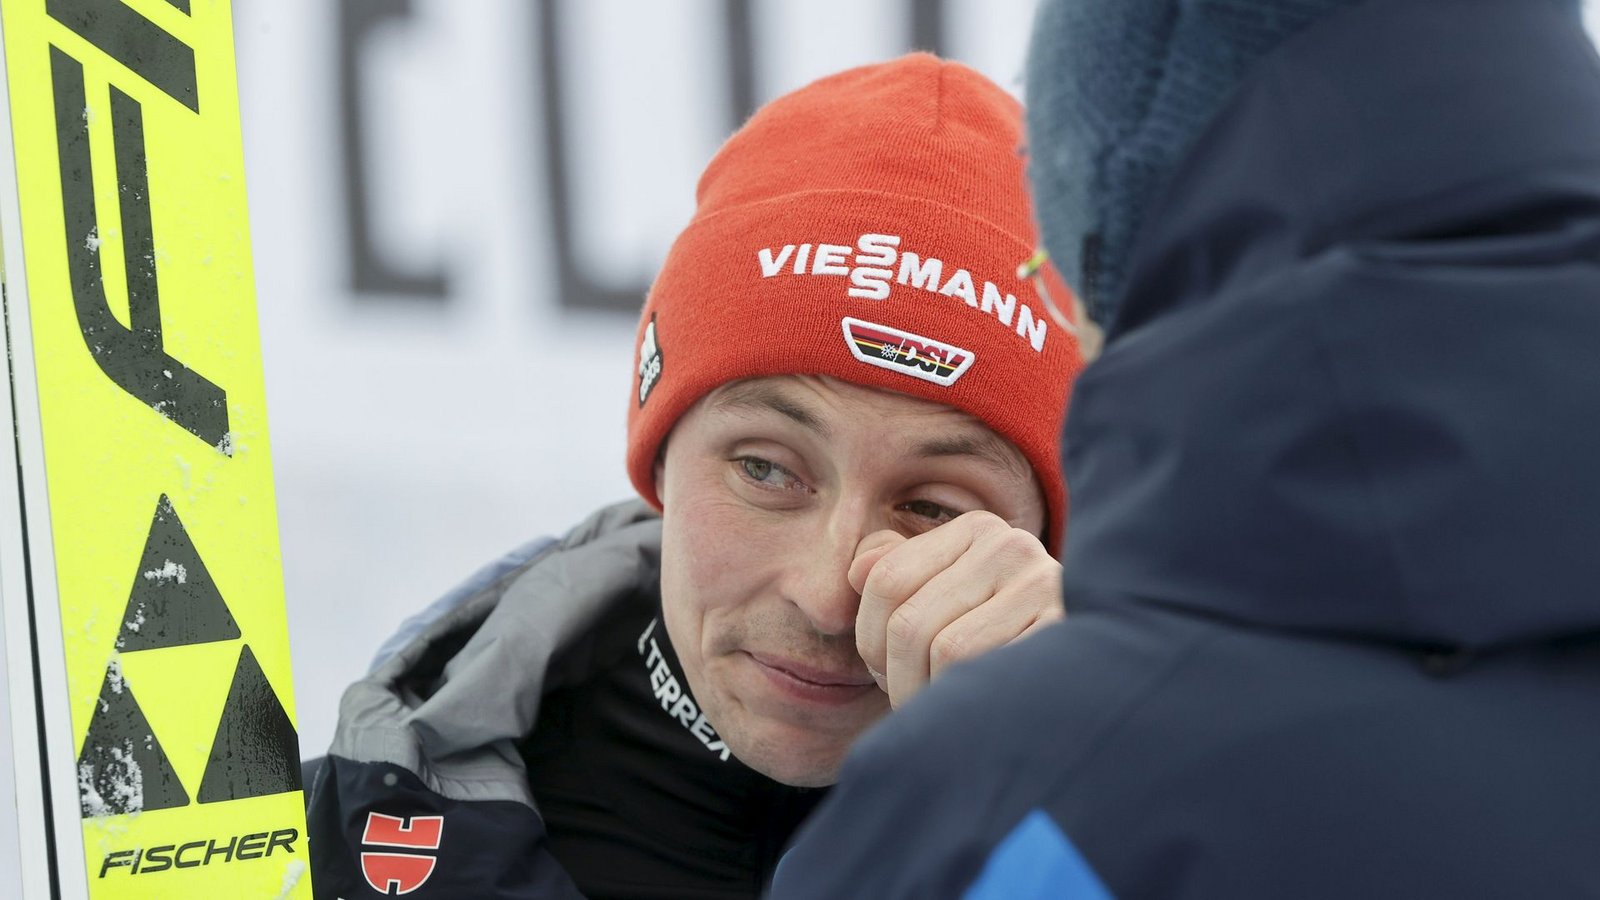 Der Kombinierer Eric Frenzel verdrückte beim letzten Wettkampf seiner Karriere ein paar Tränen.Foto: Antti Hämäläinen/Lehtikuva/dpa